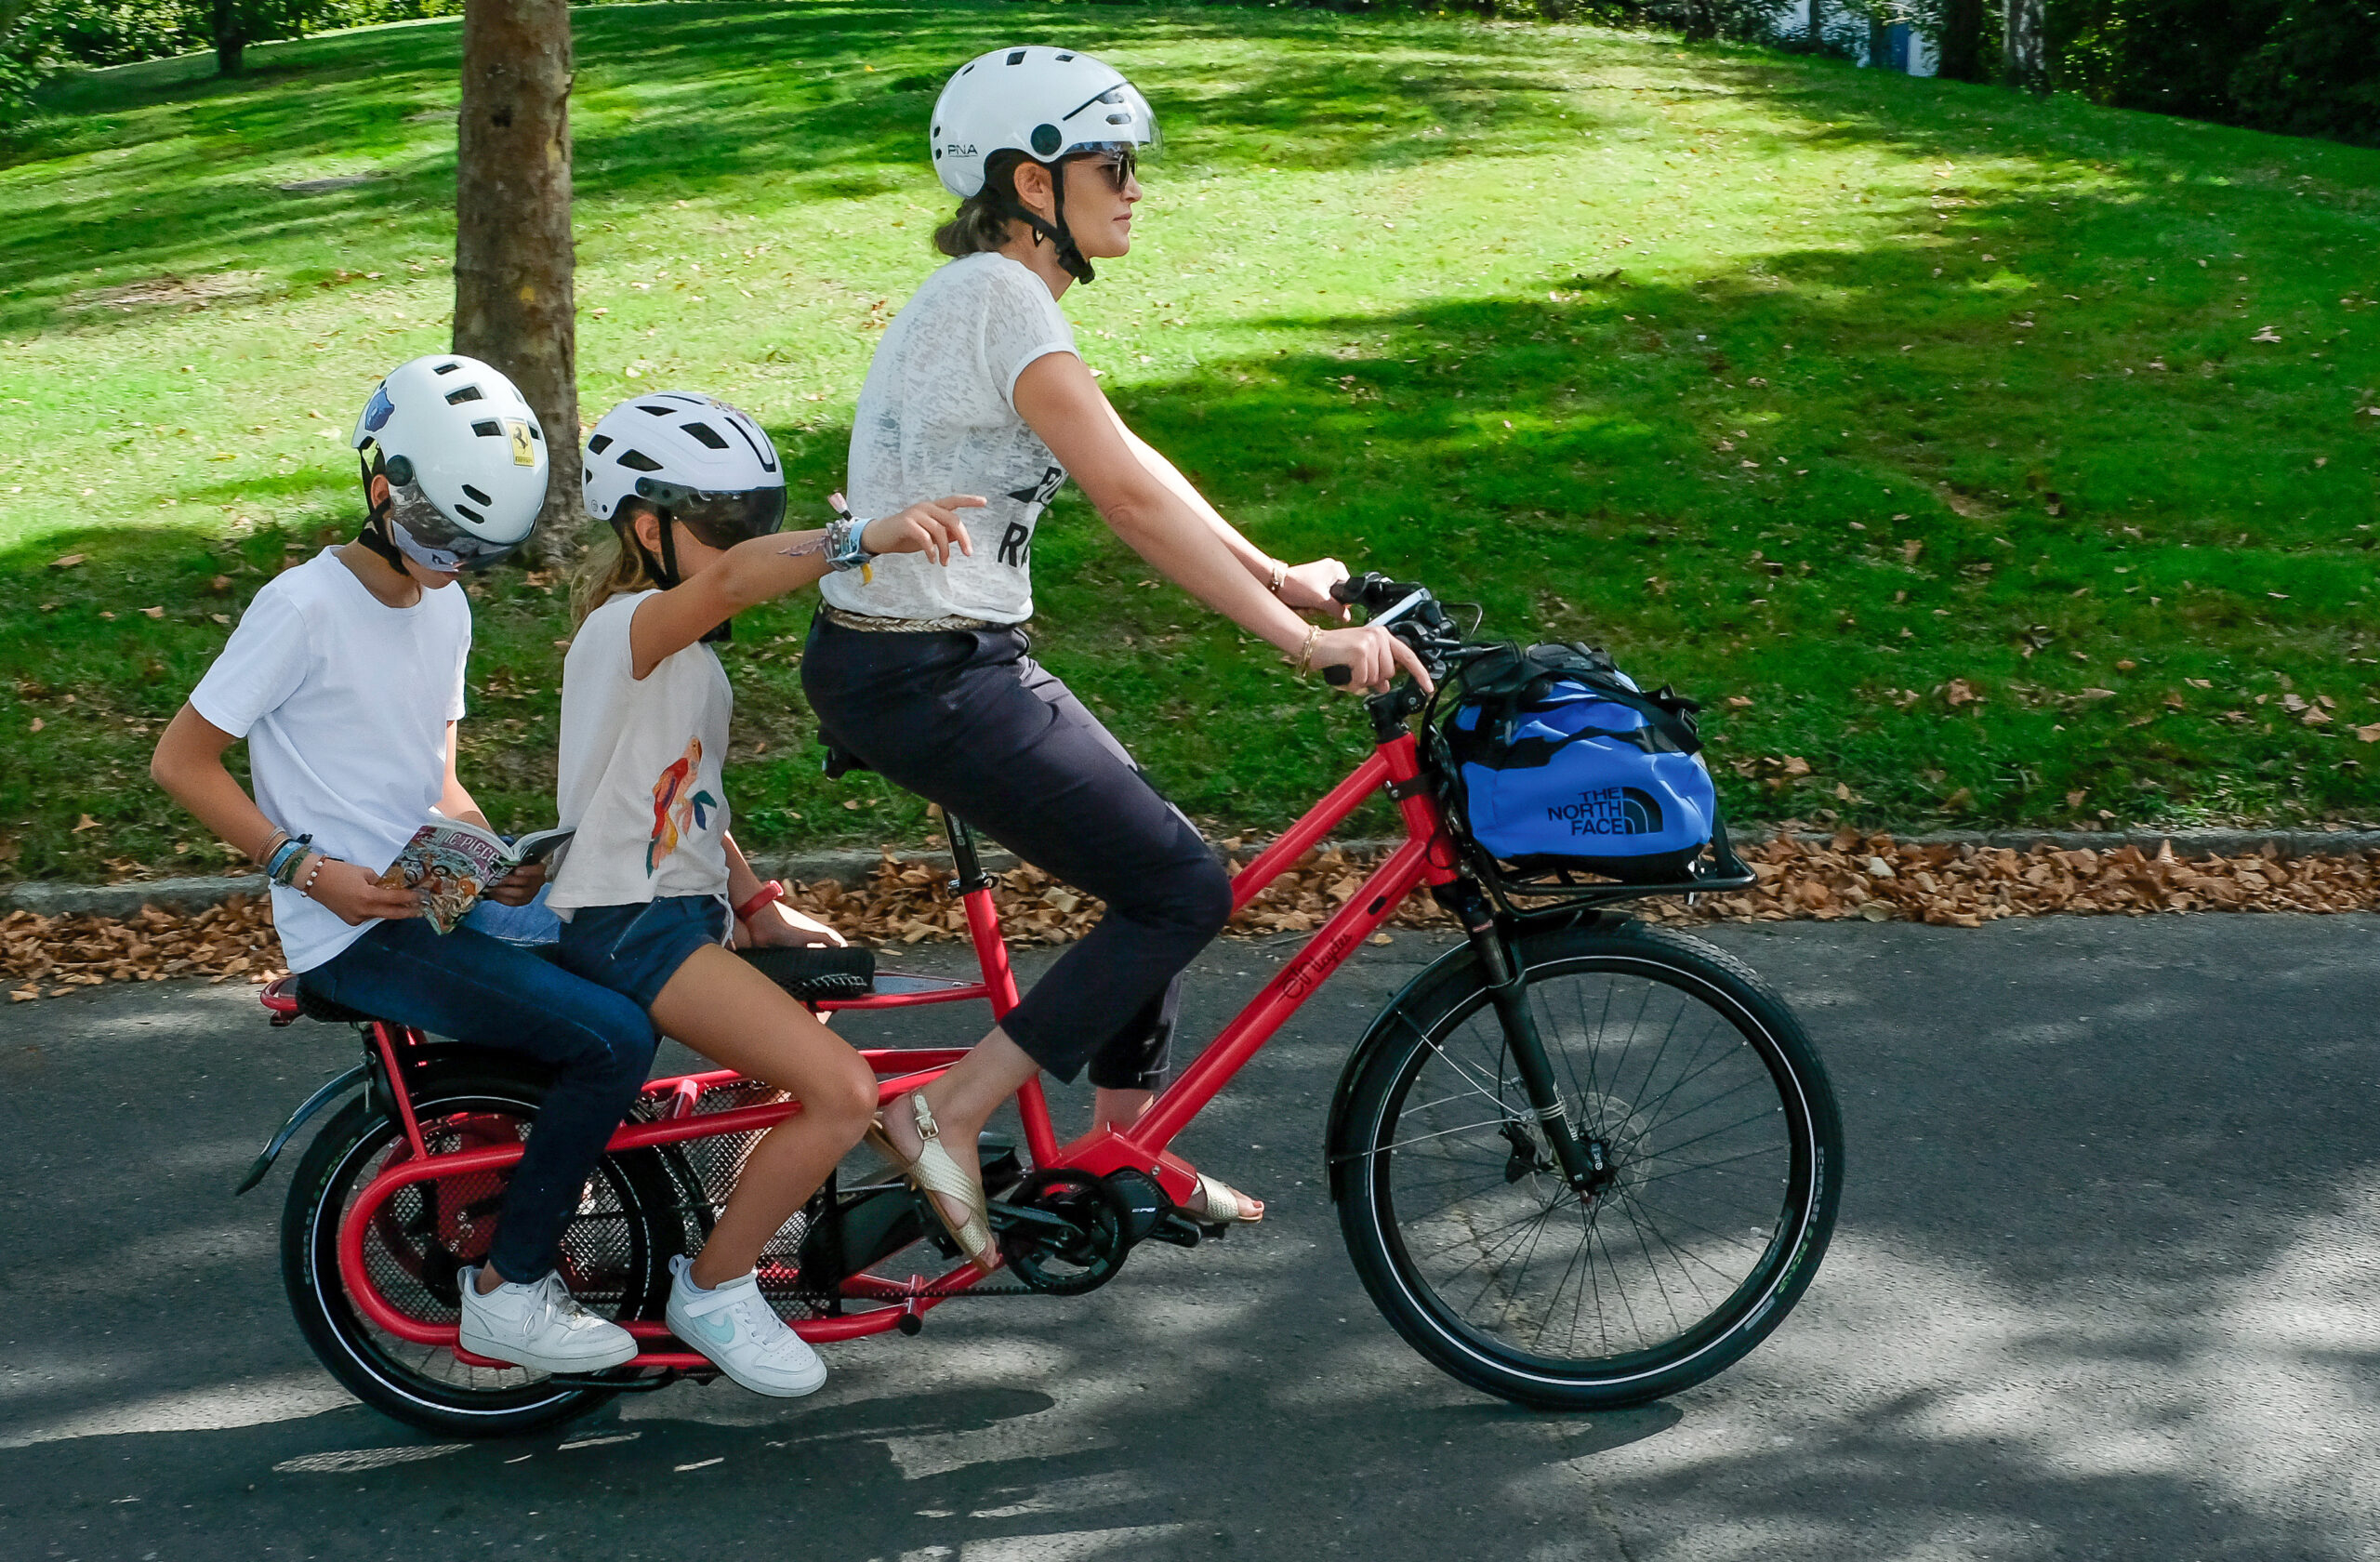 Bird lance un vélo électrique à la pointe de la technologie au Royaume-Uni  ; le Bird Bike vise à répondre à la demande croissante en termes  d'e-mobilité personnelle